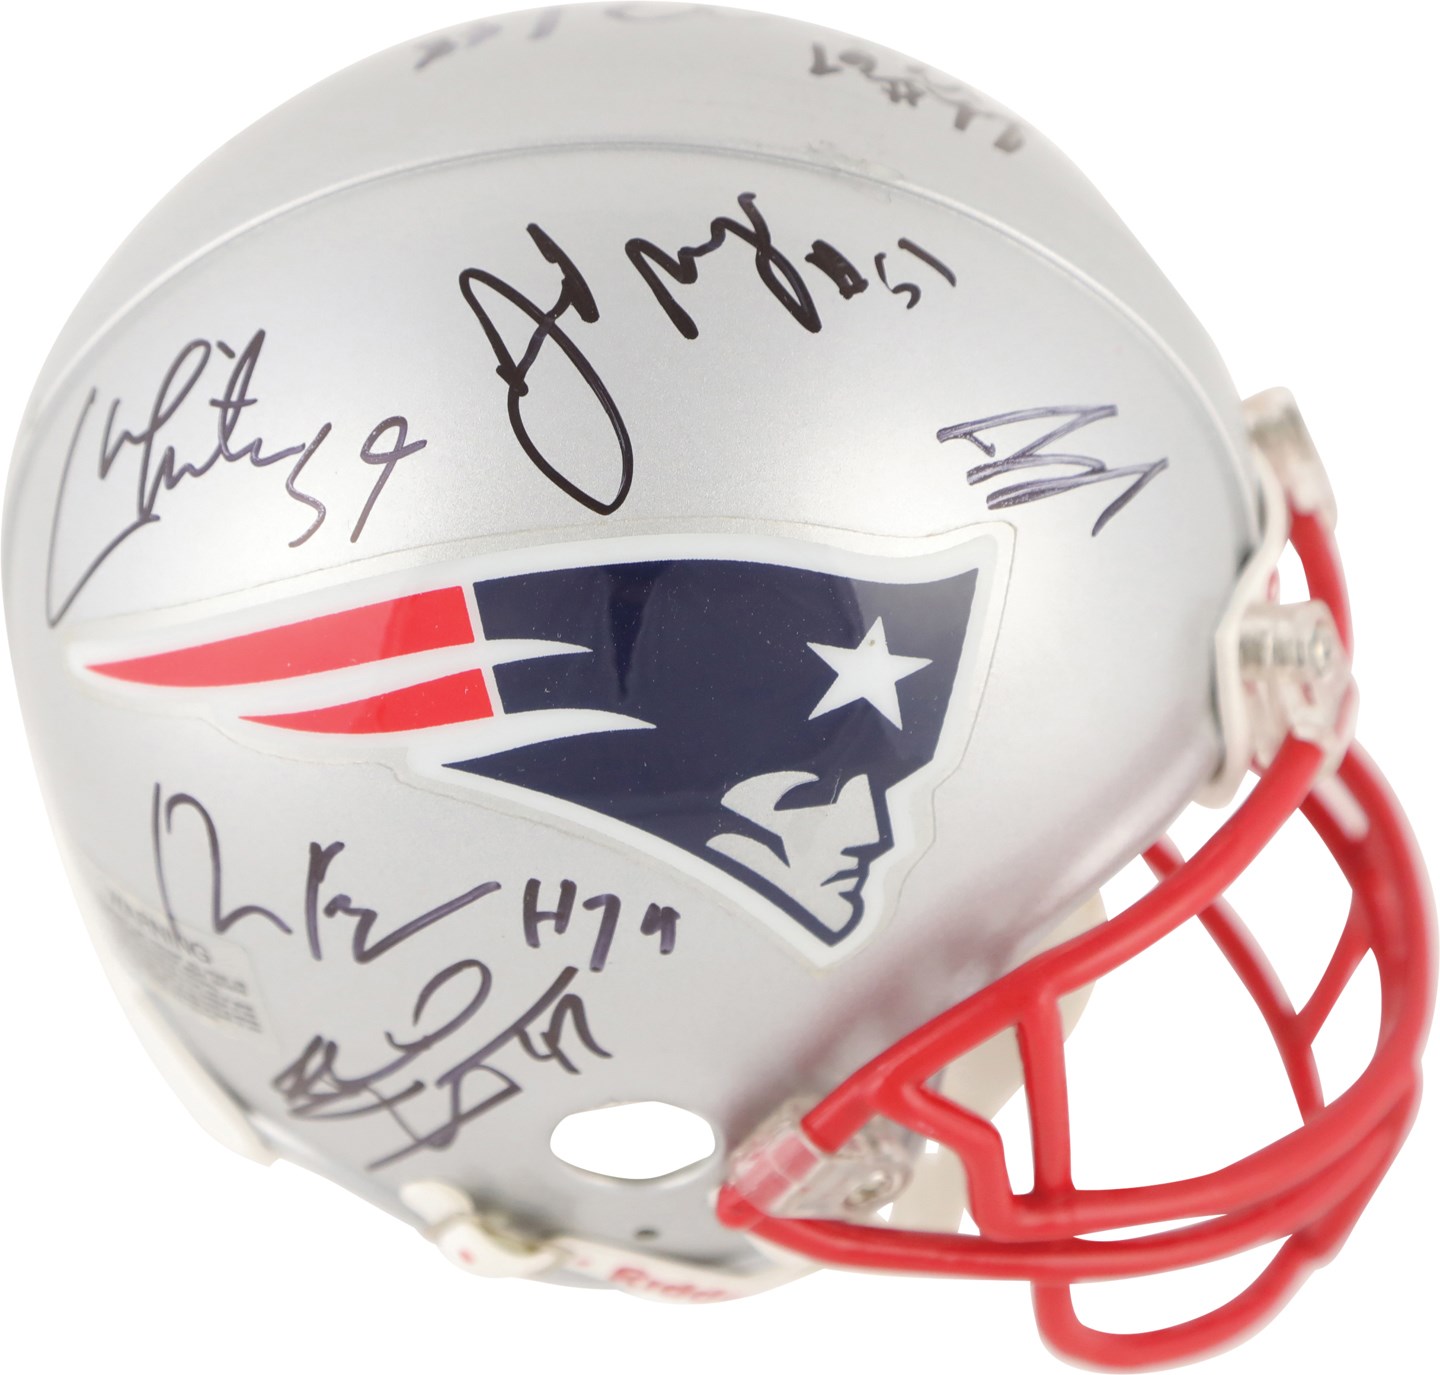 - 2014 Super Bowl XLIX Champion New England Patriots Team Signed Mini Helmet w/Tom Brady (JSA)